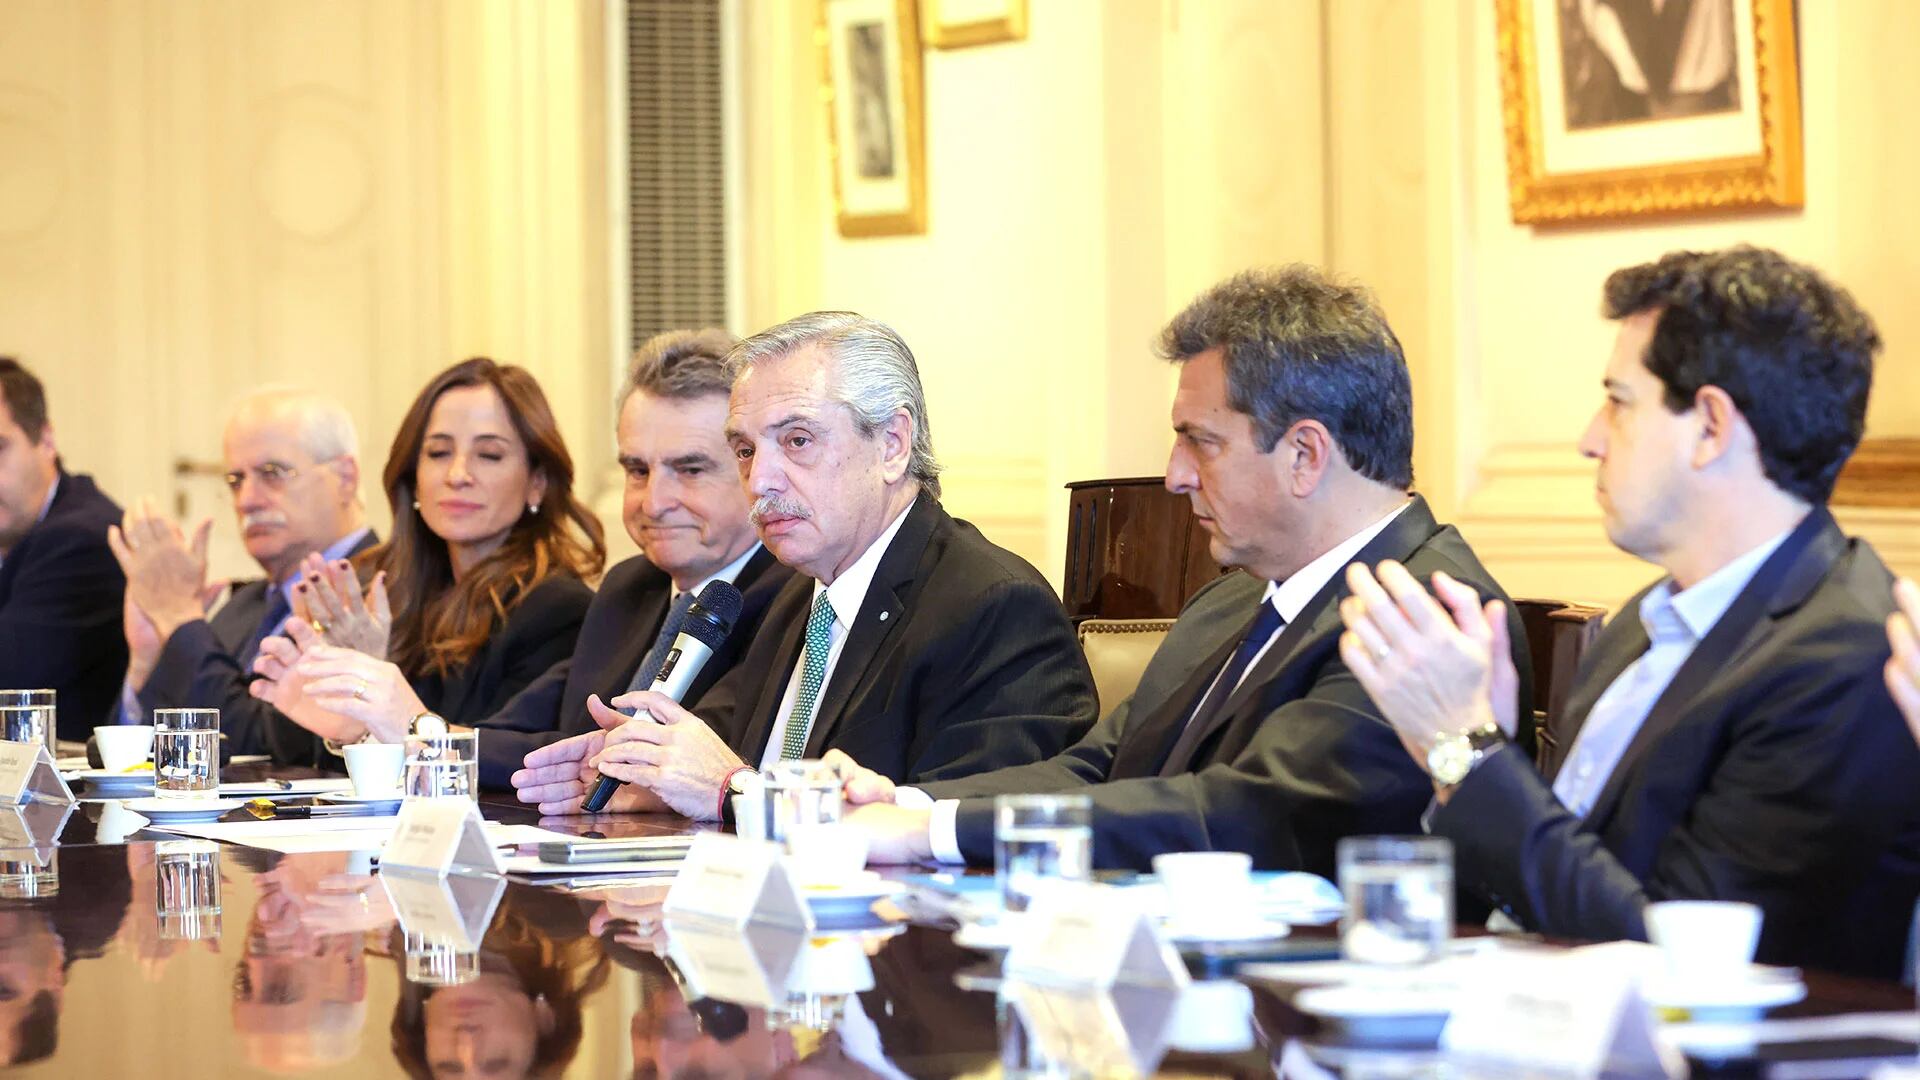 El Gabinete volvió a reunirse el miércoles después de varios meses en la Casa Rosada (Foto: Presidencia)

